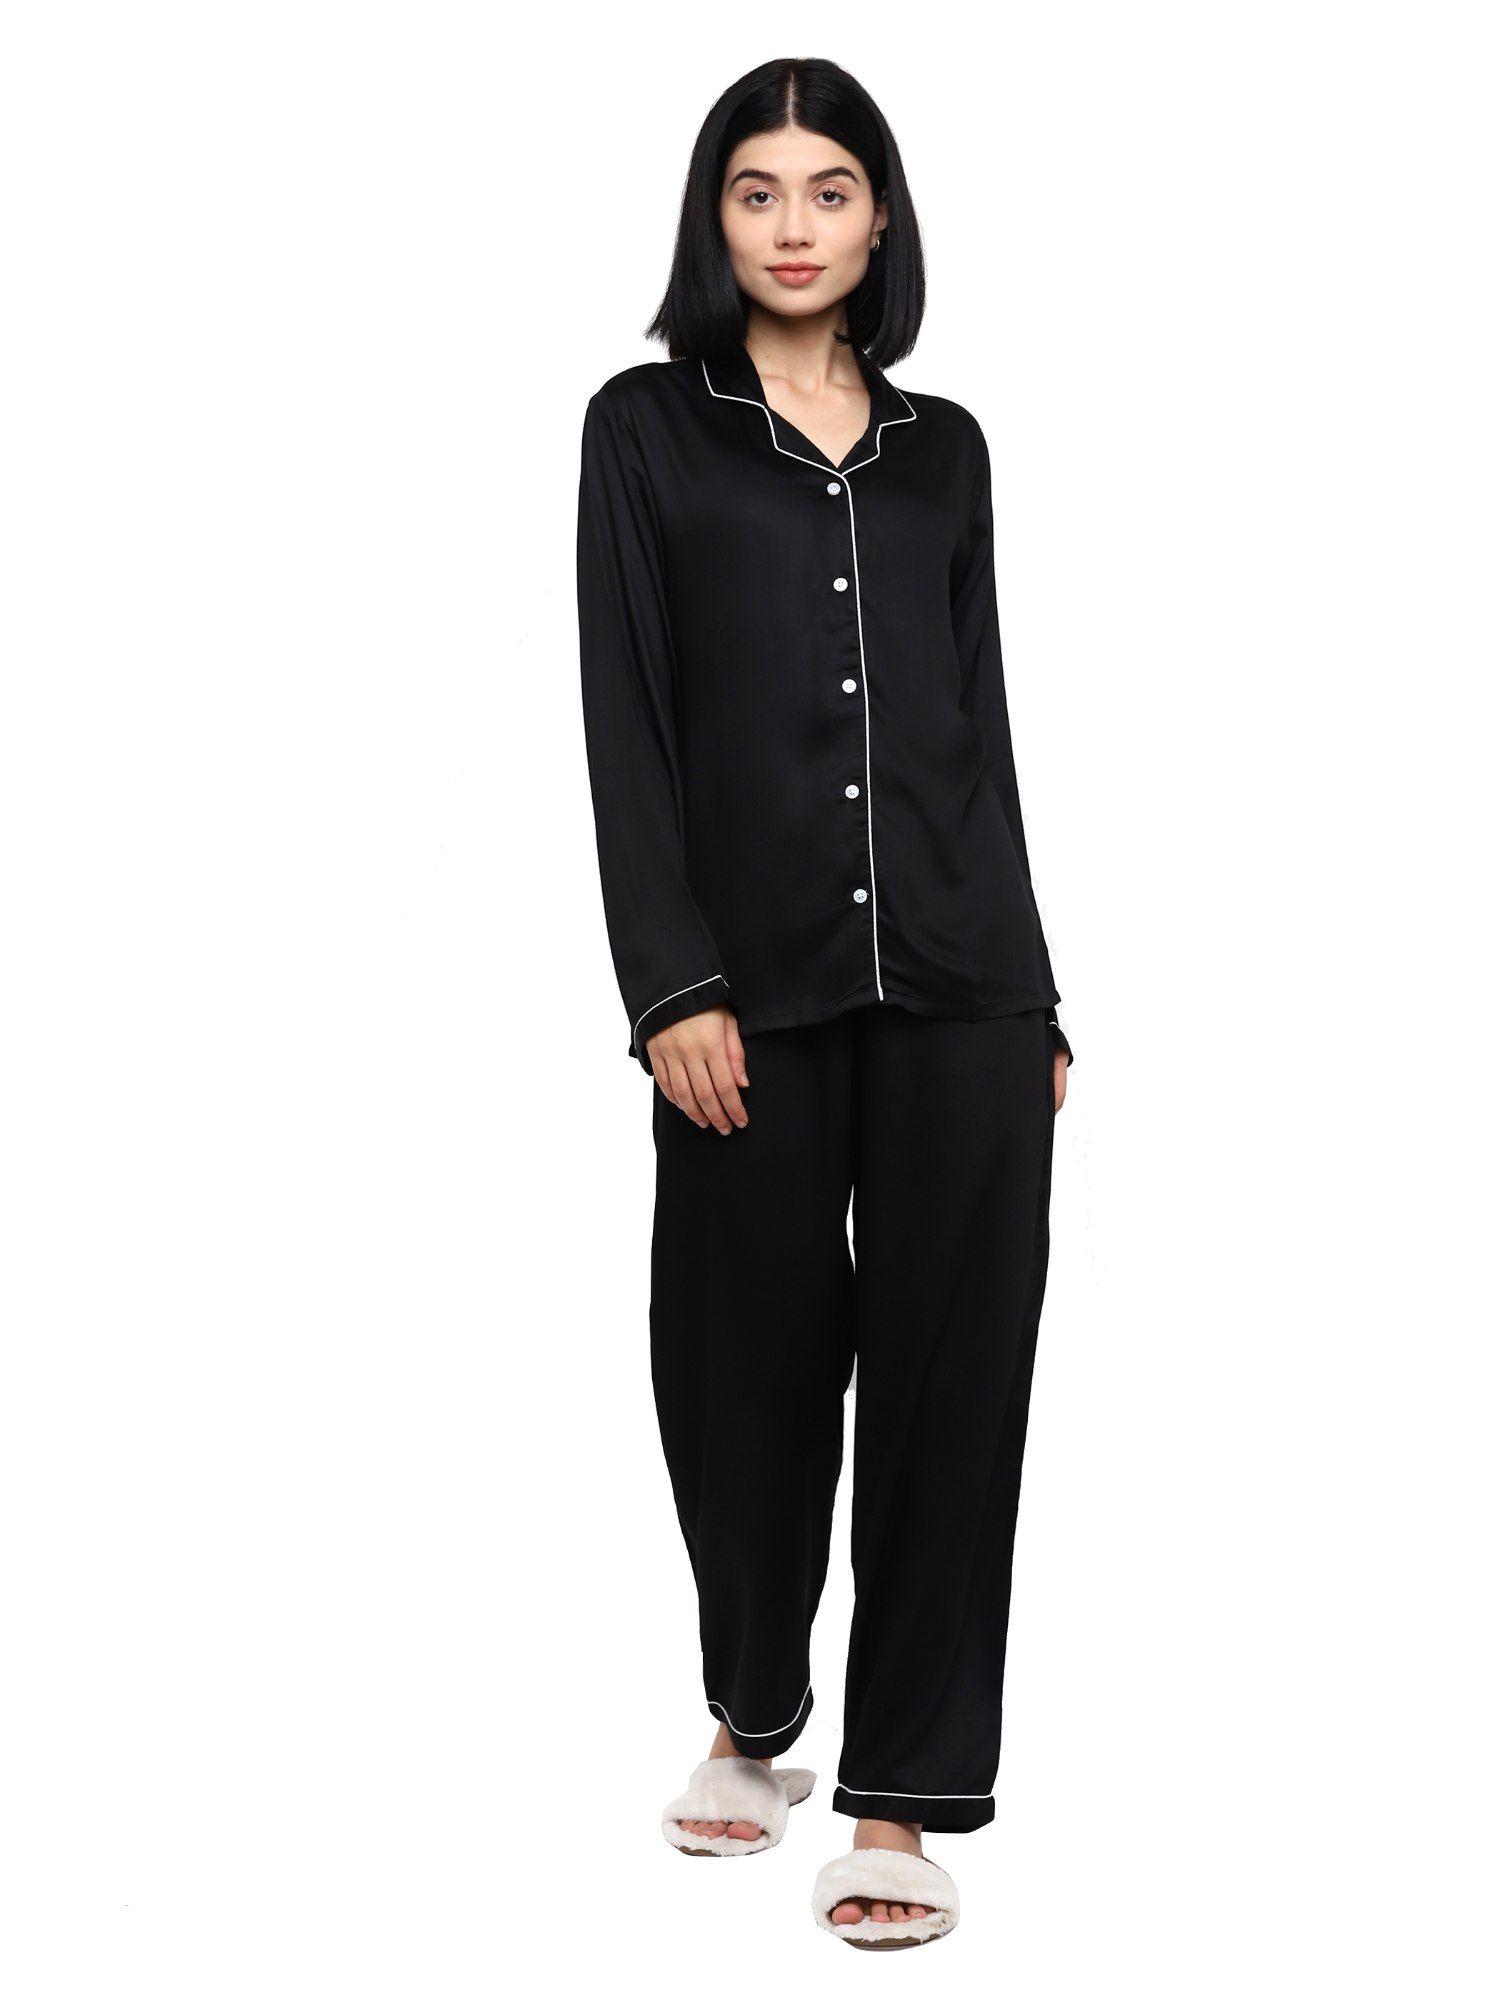 ultra-soft-black-modal-satin-long-sleeve-women's-night-suit-|lounge-wear